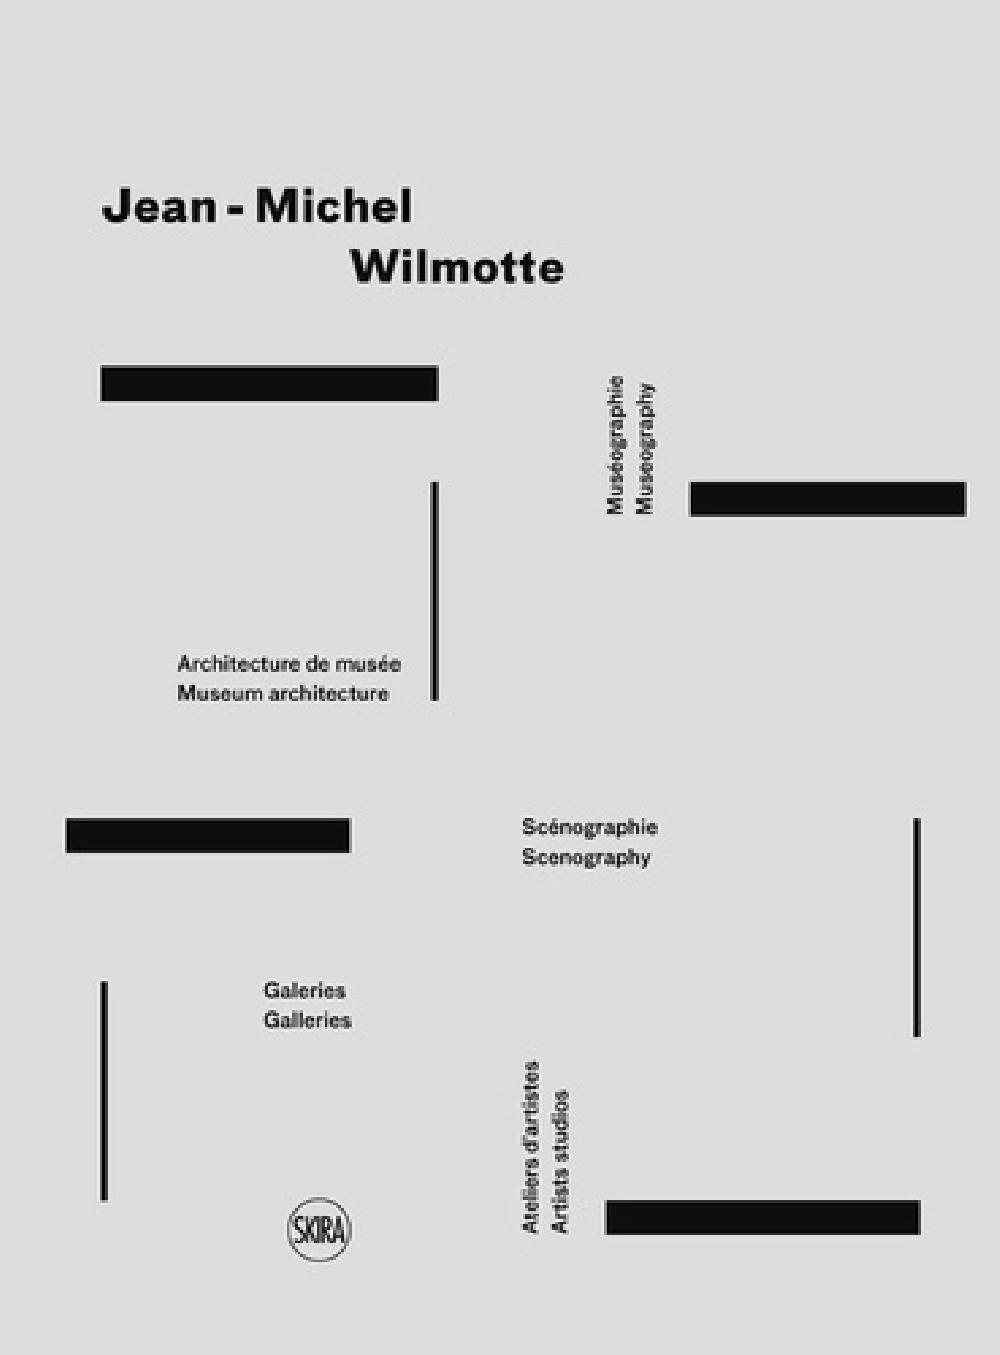 Jean-Michel Wilmotte - Muséographie, architecture de musée, scénographie, galeries, ateliers d'artis